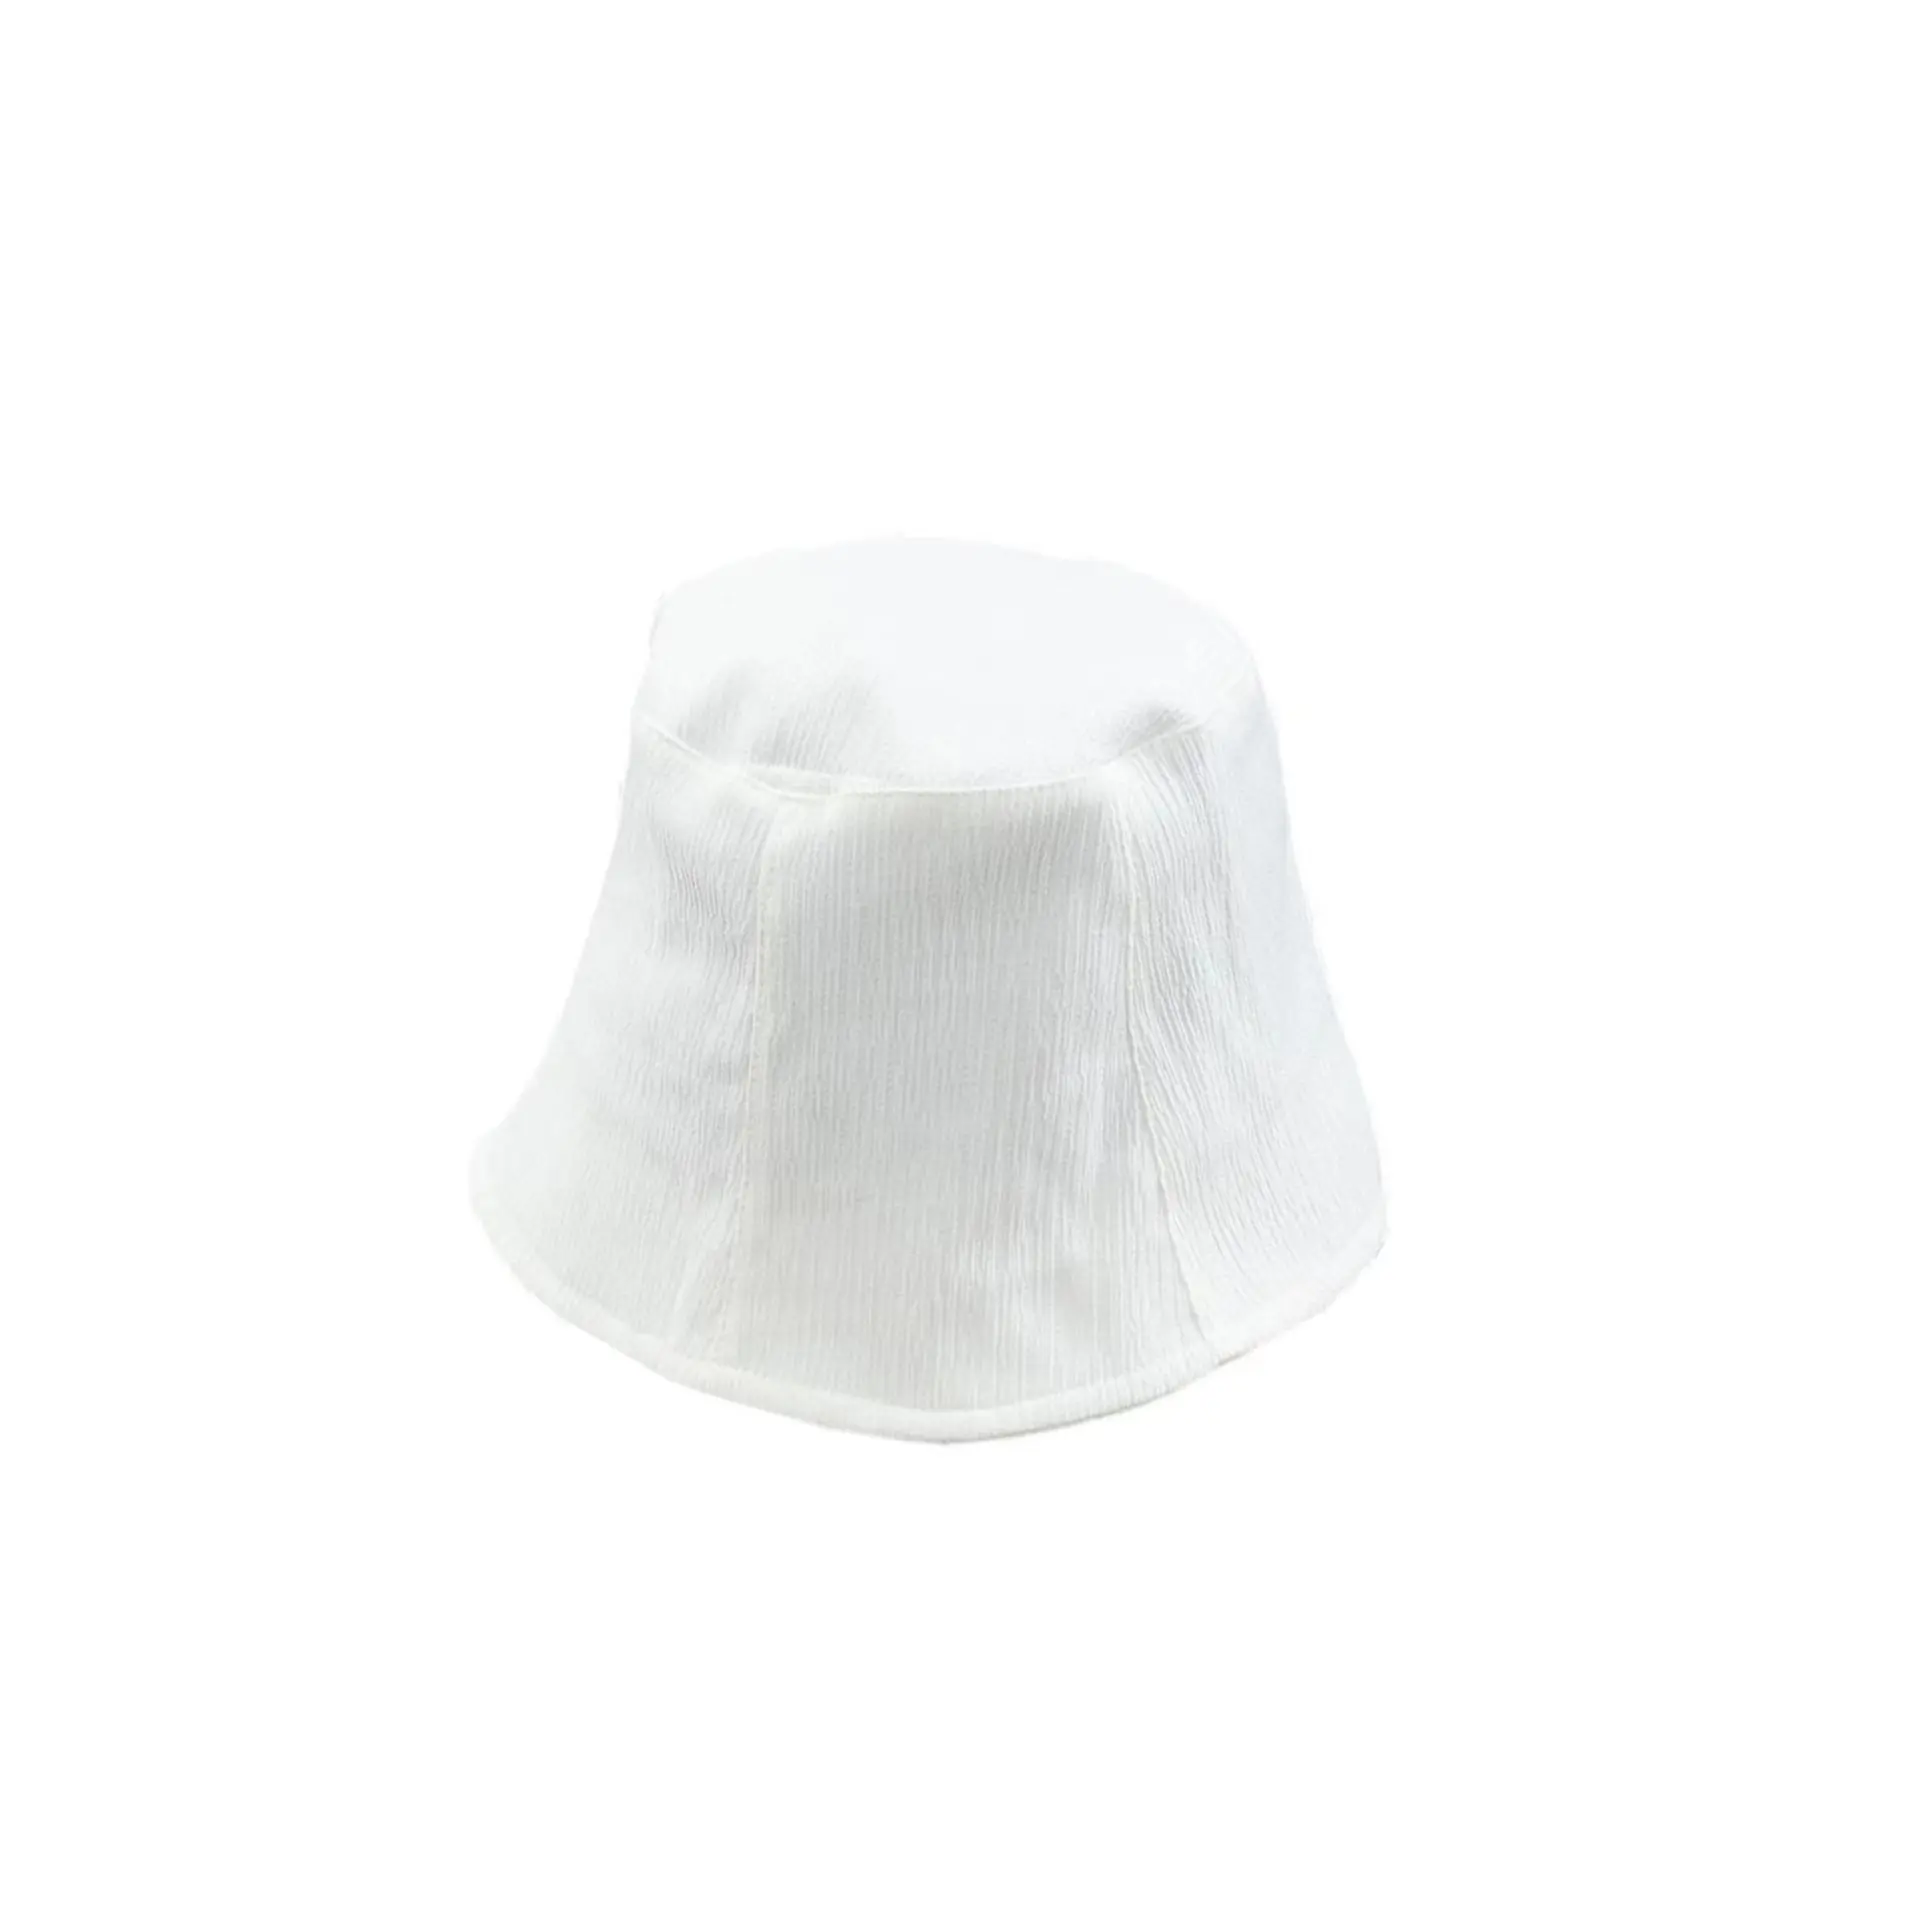 للبيع بالجملة قبعات بدلو مصممة حسب الطلب صنعت في الصين للنساء بطباعة بسيطة للأطفال من القطن للجنسين للبيع بالجملة قطع للتعبئة